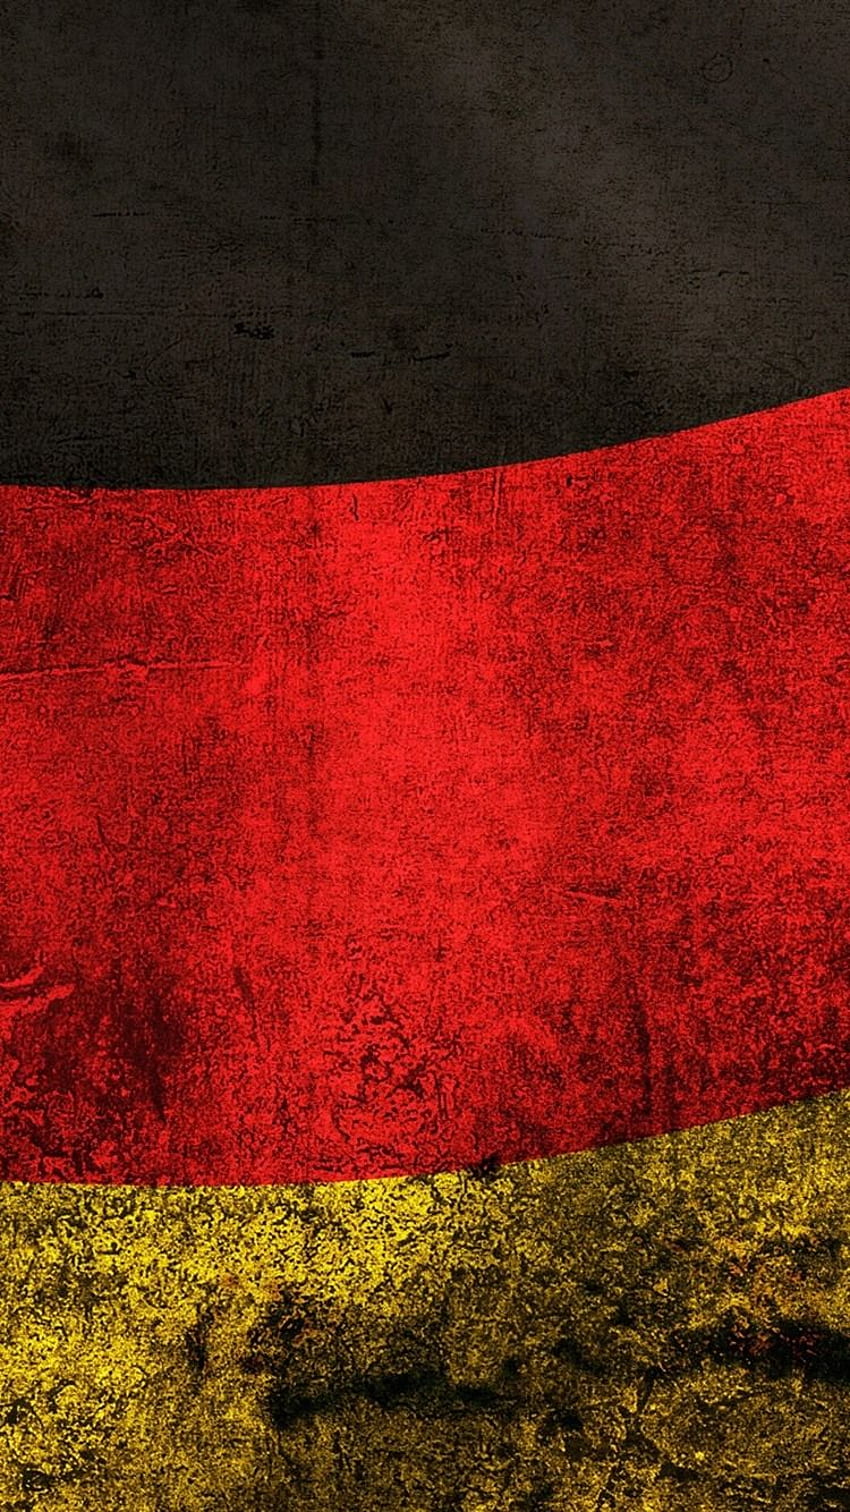 Bạn đang tìm kiếm hình nền có gam màu, hình ảnh theo phong cách Đức? Với những bức ảnh hình nền quốc kỳ Đức đẹp mắt, bạn sẽ thật sự yêu thích điều đó. Hãy xem ngay để trải nghiệm sự đẹp mê hồn của hình nền quốc kỳ Đức. 